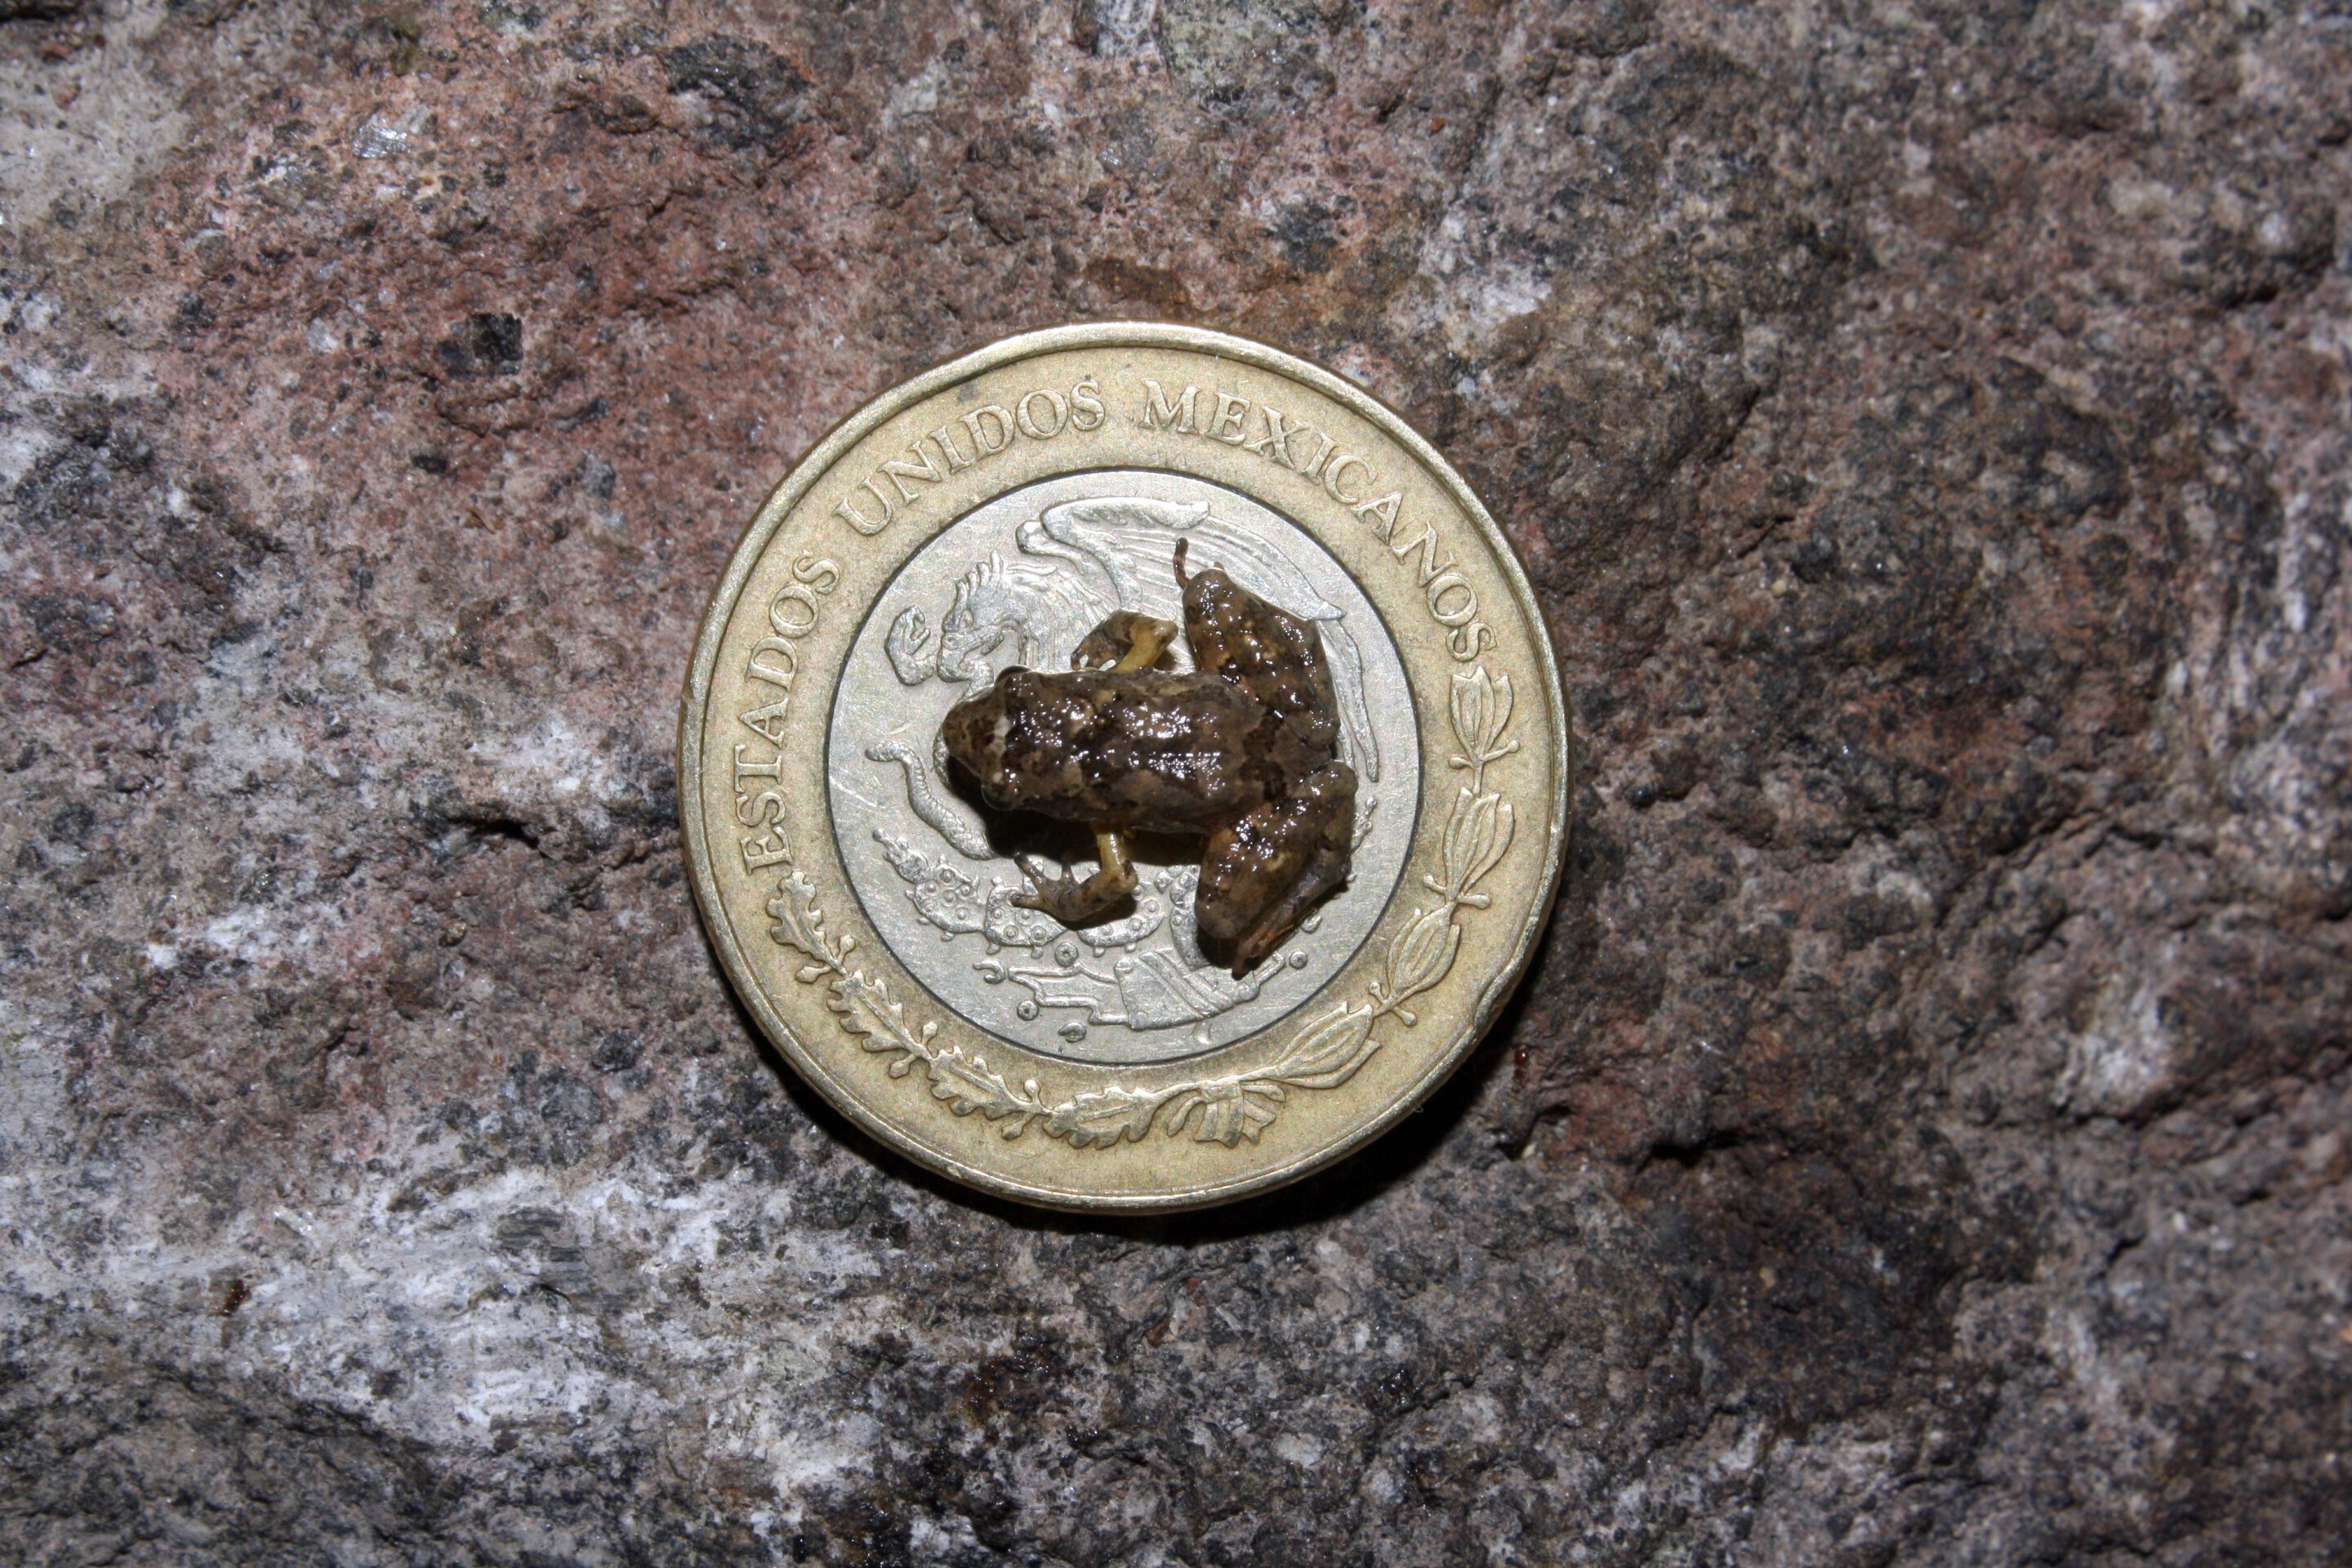 Craugastor rubinus em moeda mexicana de 10 pesos (Foto: Jeffrey W Streicher, Museu de História Natural, Londres)